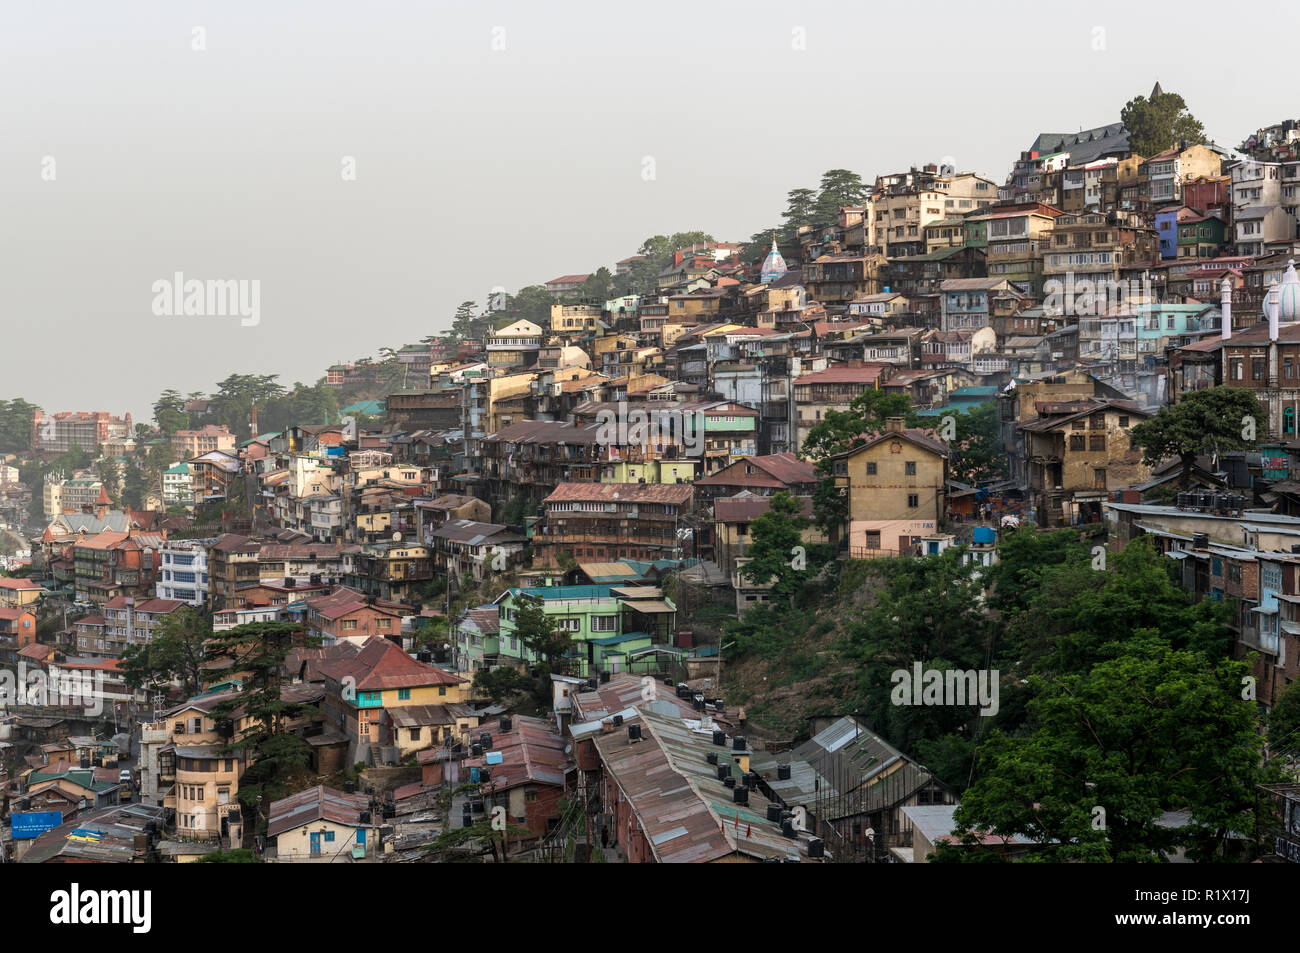 Las casas de Shimla, el capitolio del estado de Himachal Pradesh y muy popular hillstation a 2.200 m, están atrapados en la ladera de una montaña rid Foto de stock